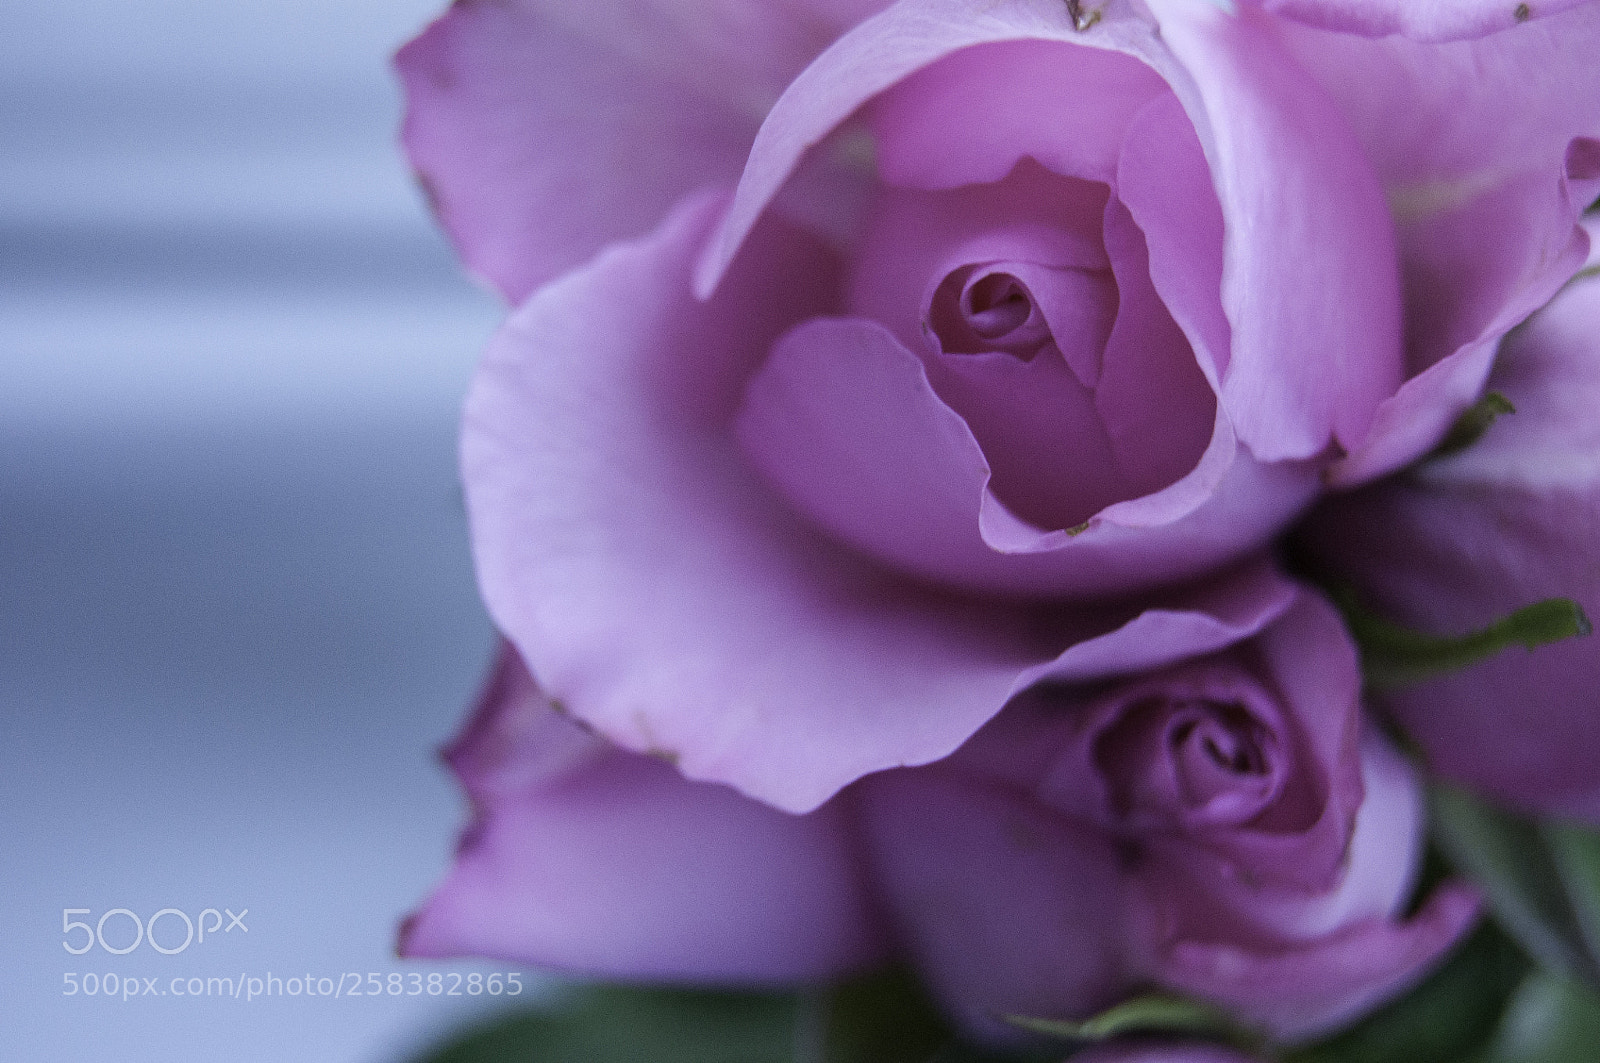 Nikon D5000 sample photo. A pink rose photography